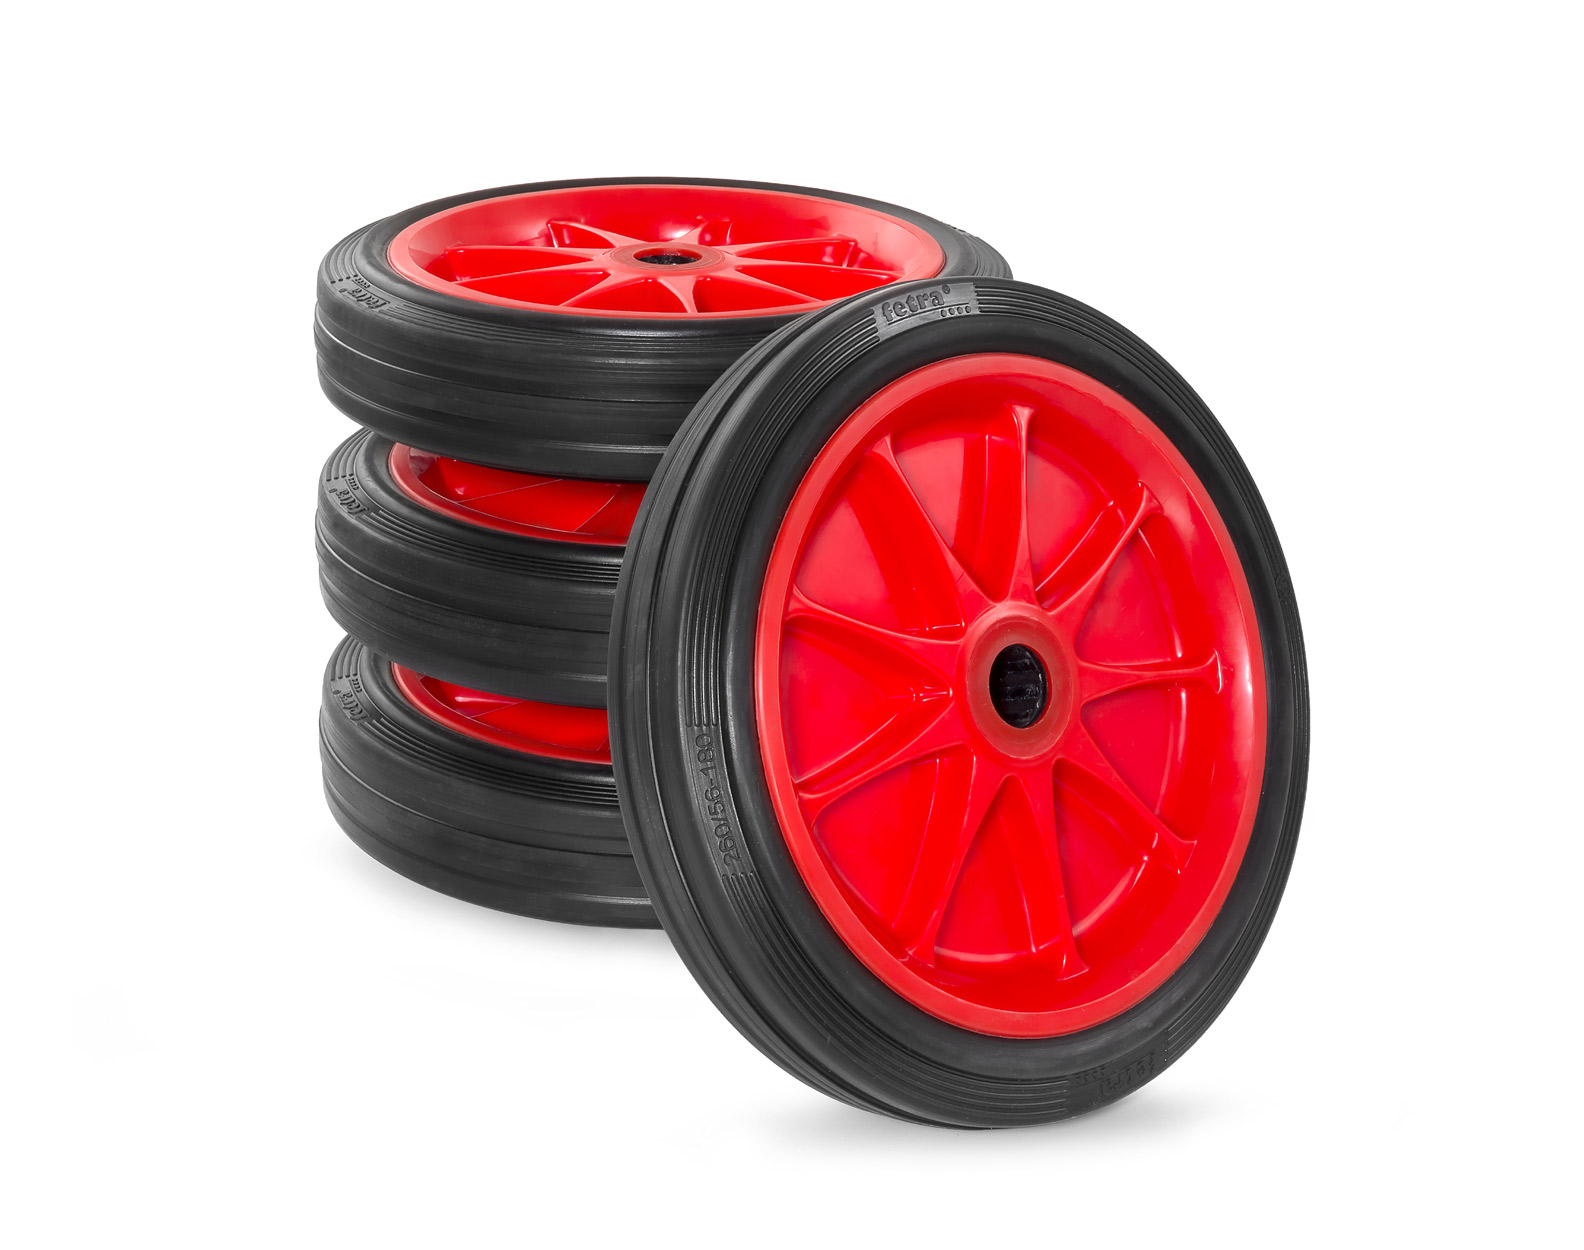 Blauw picknick auteur fetra heeft een nieuw massief rubber wiel voor steekwagens in het programma  | Nieuws | fetra Transportmiddelen